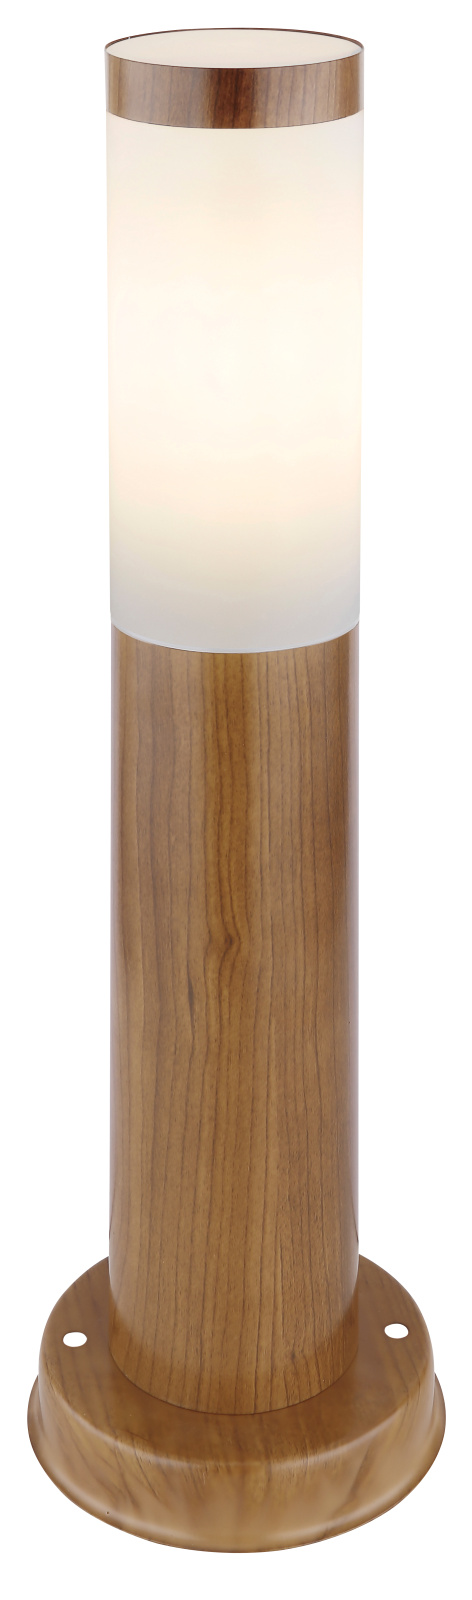 Kültéri állólámpa fém fa mintázattal, műanyag opál búrával. IP44, O:1